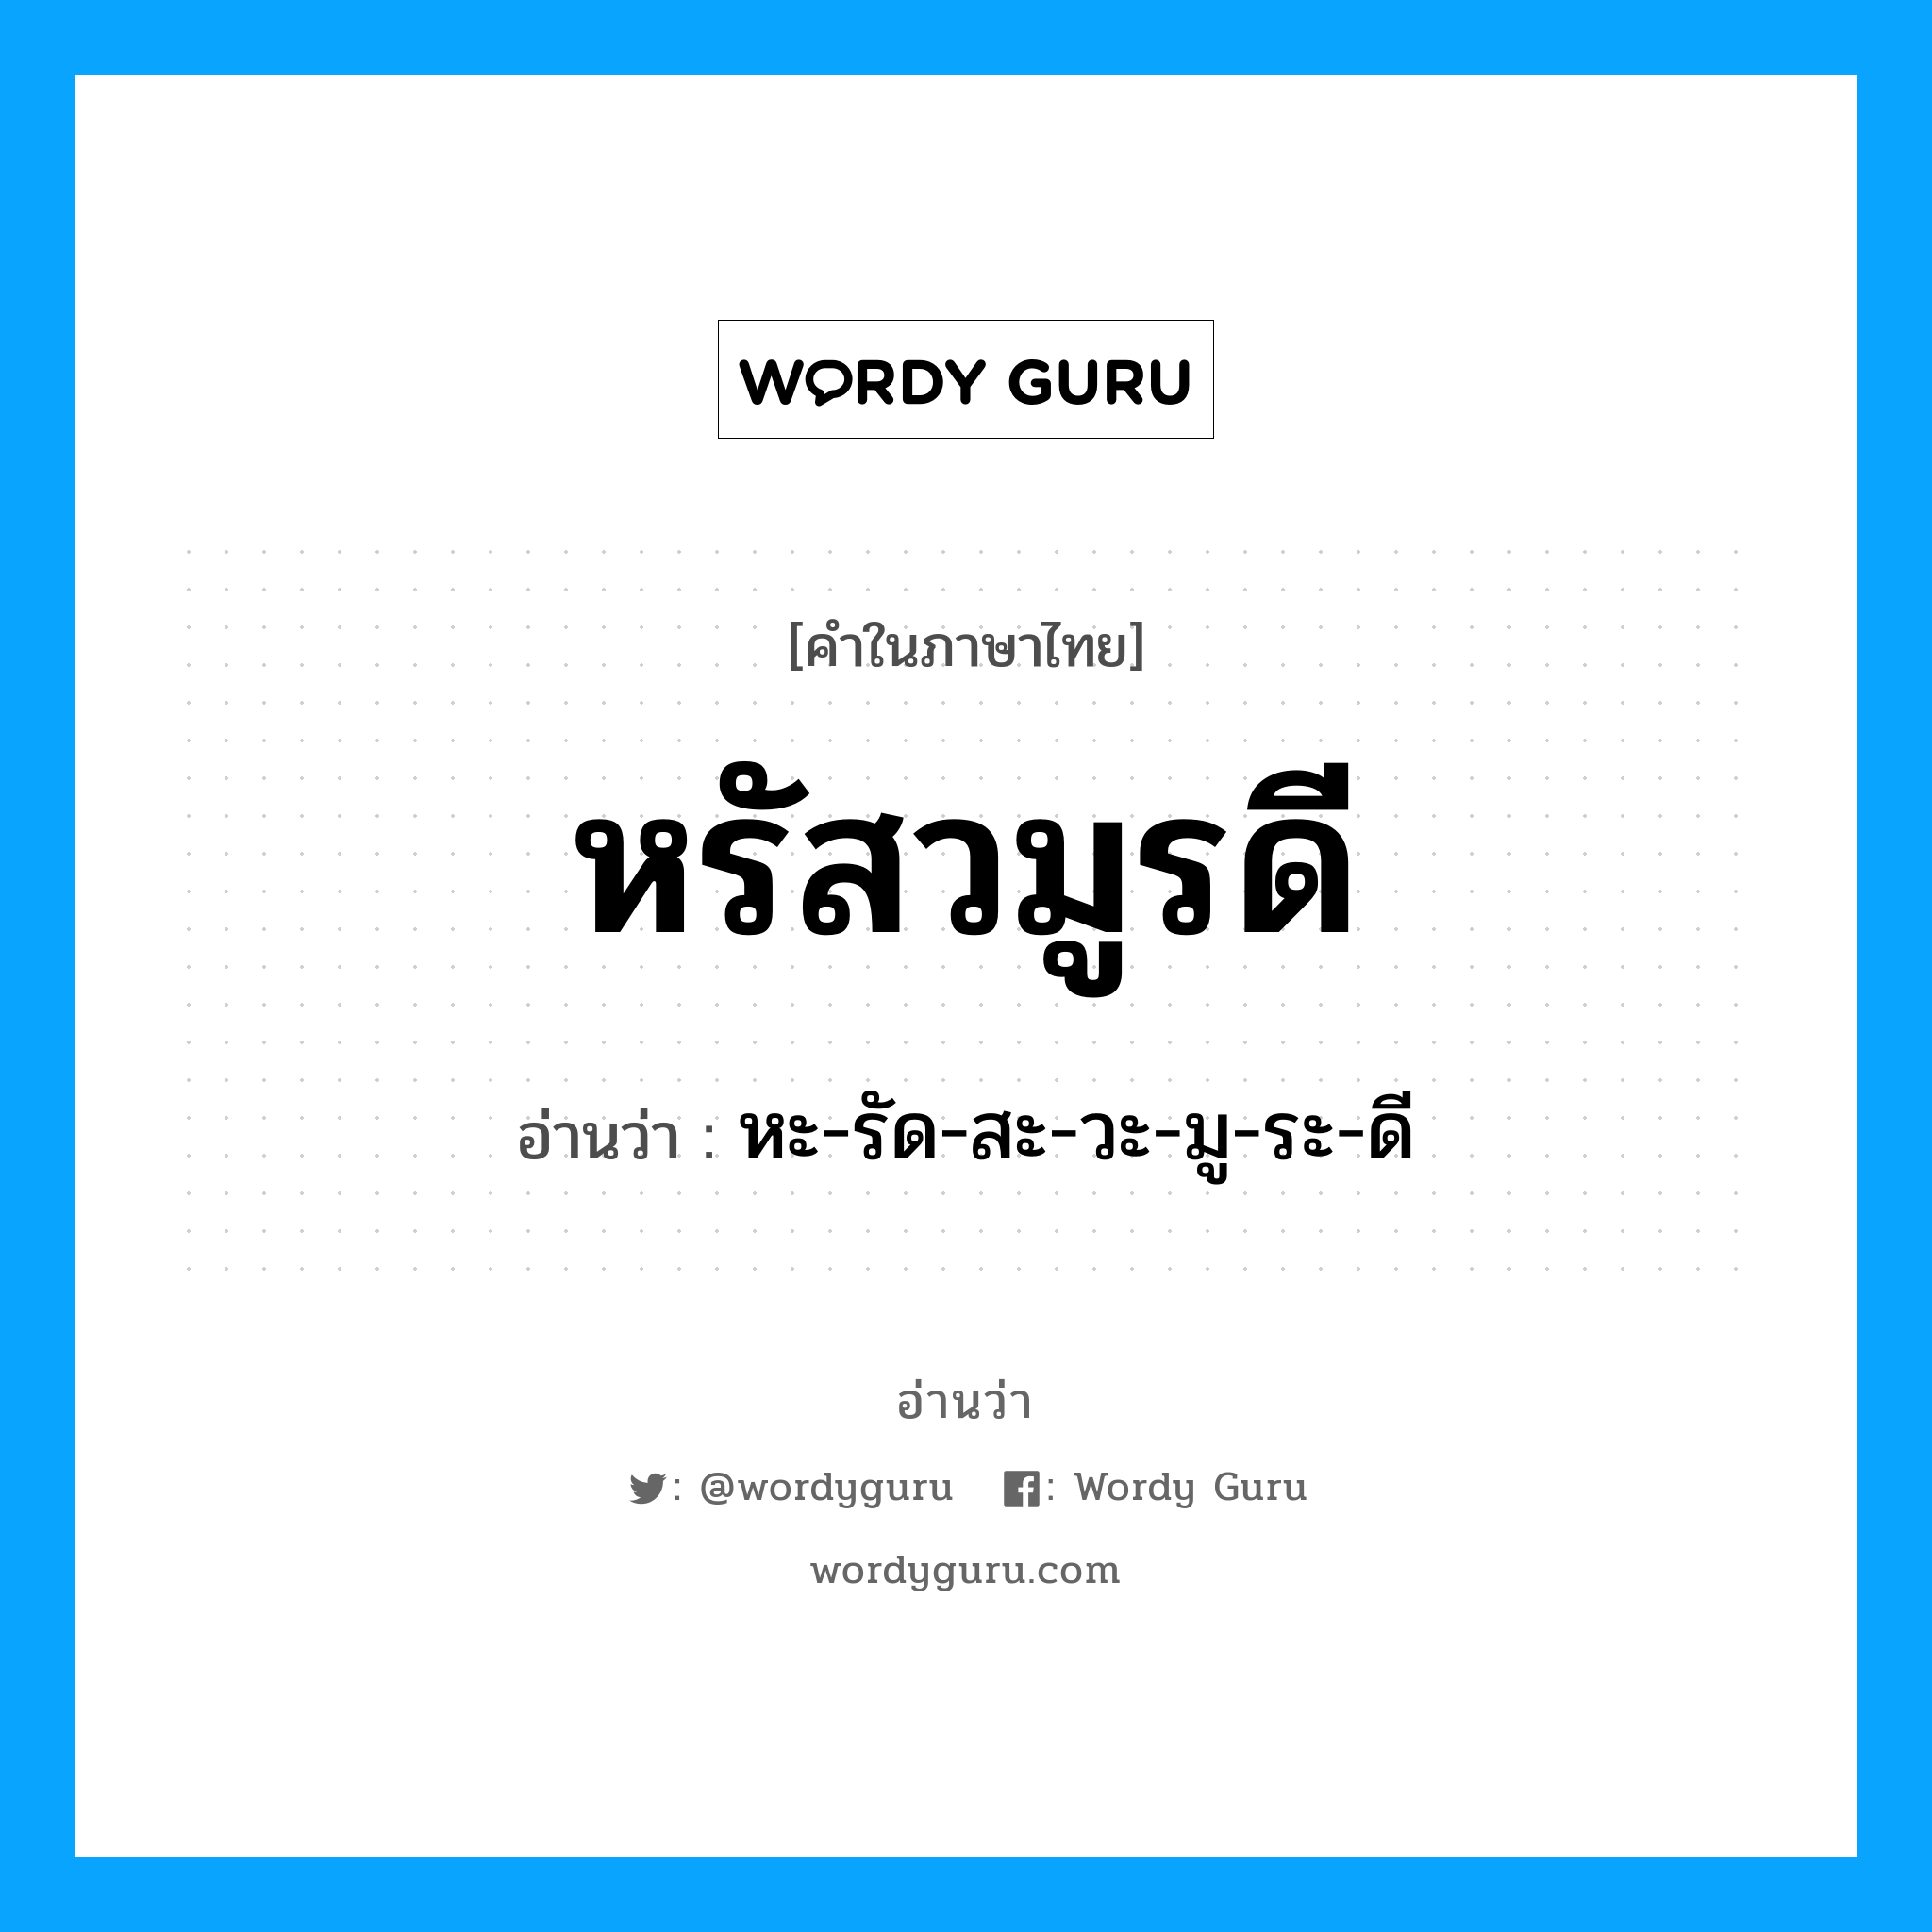 หะ-รัด-สะ-วะ-มู-ระ-ดี เป็นคำอ่านของคำไหน?, คำในภาษาไทย หะ-รัด-สะ-วะ-มู-ระ-ดี อ่านว่า หรัสวมูรดี